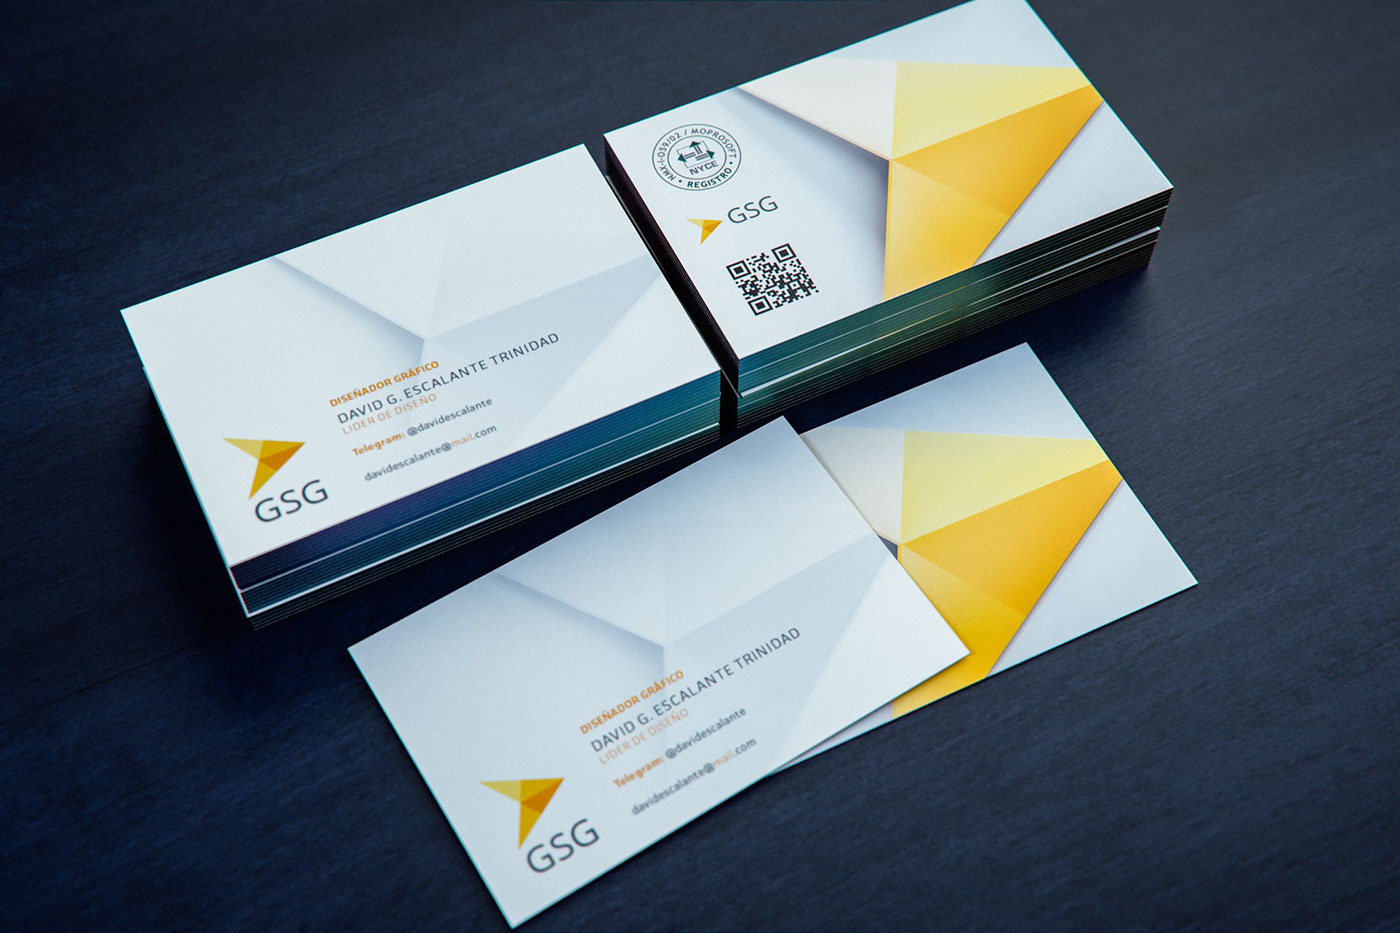 gsg david escalante cozumel mexico Tarjetas de Presentación business card brand